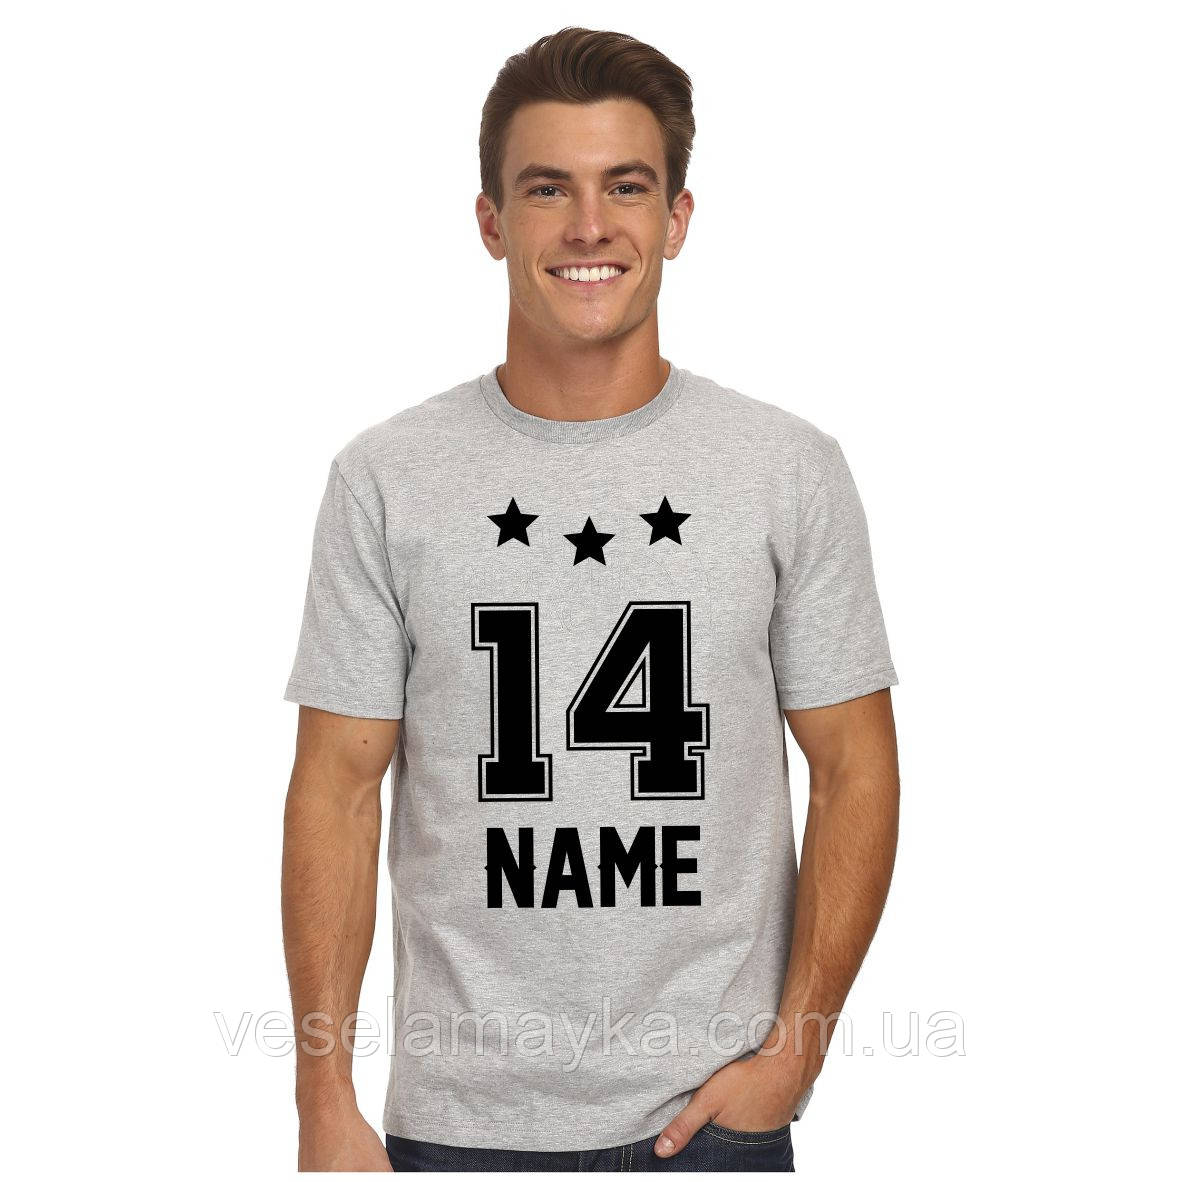 Іменна футболка з номером і зірками